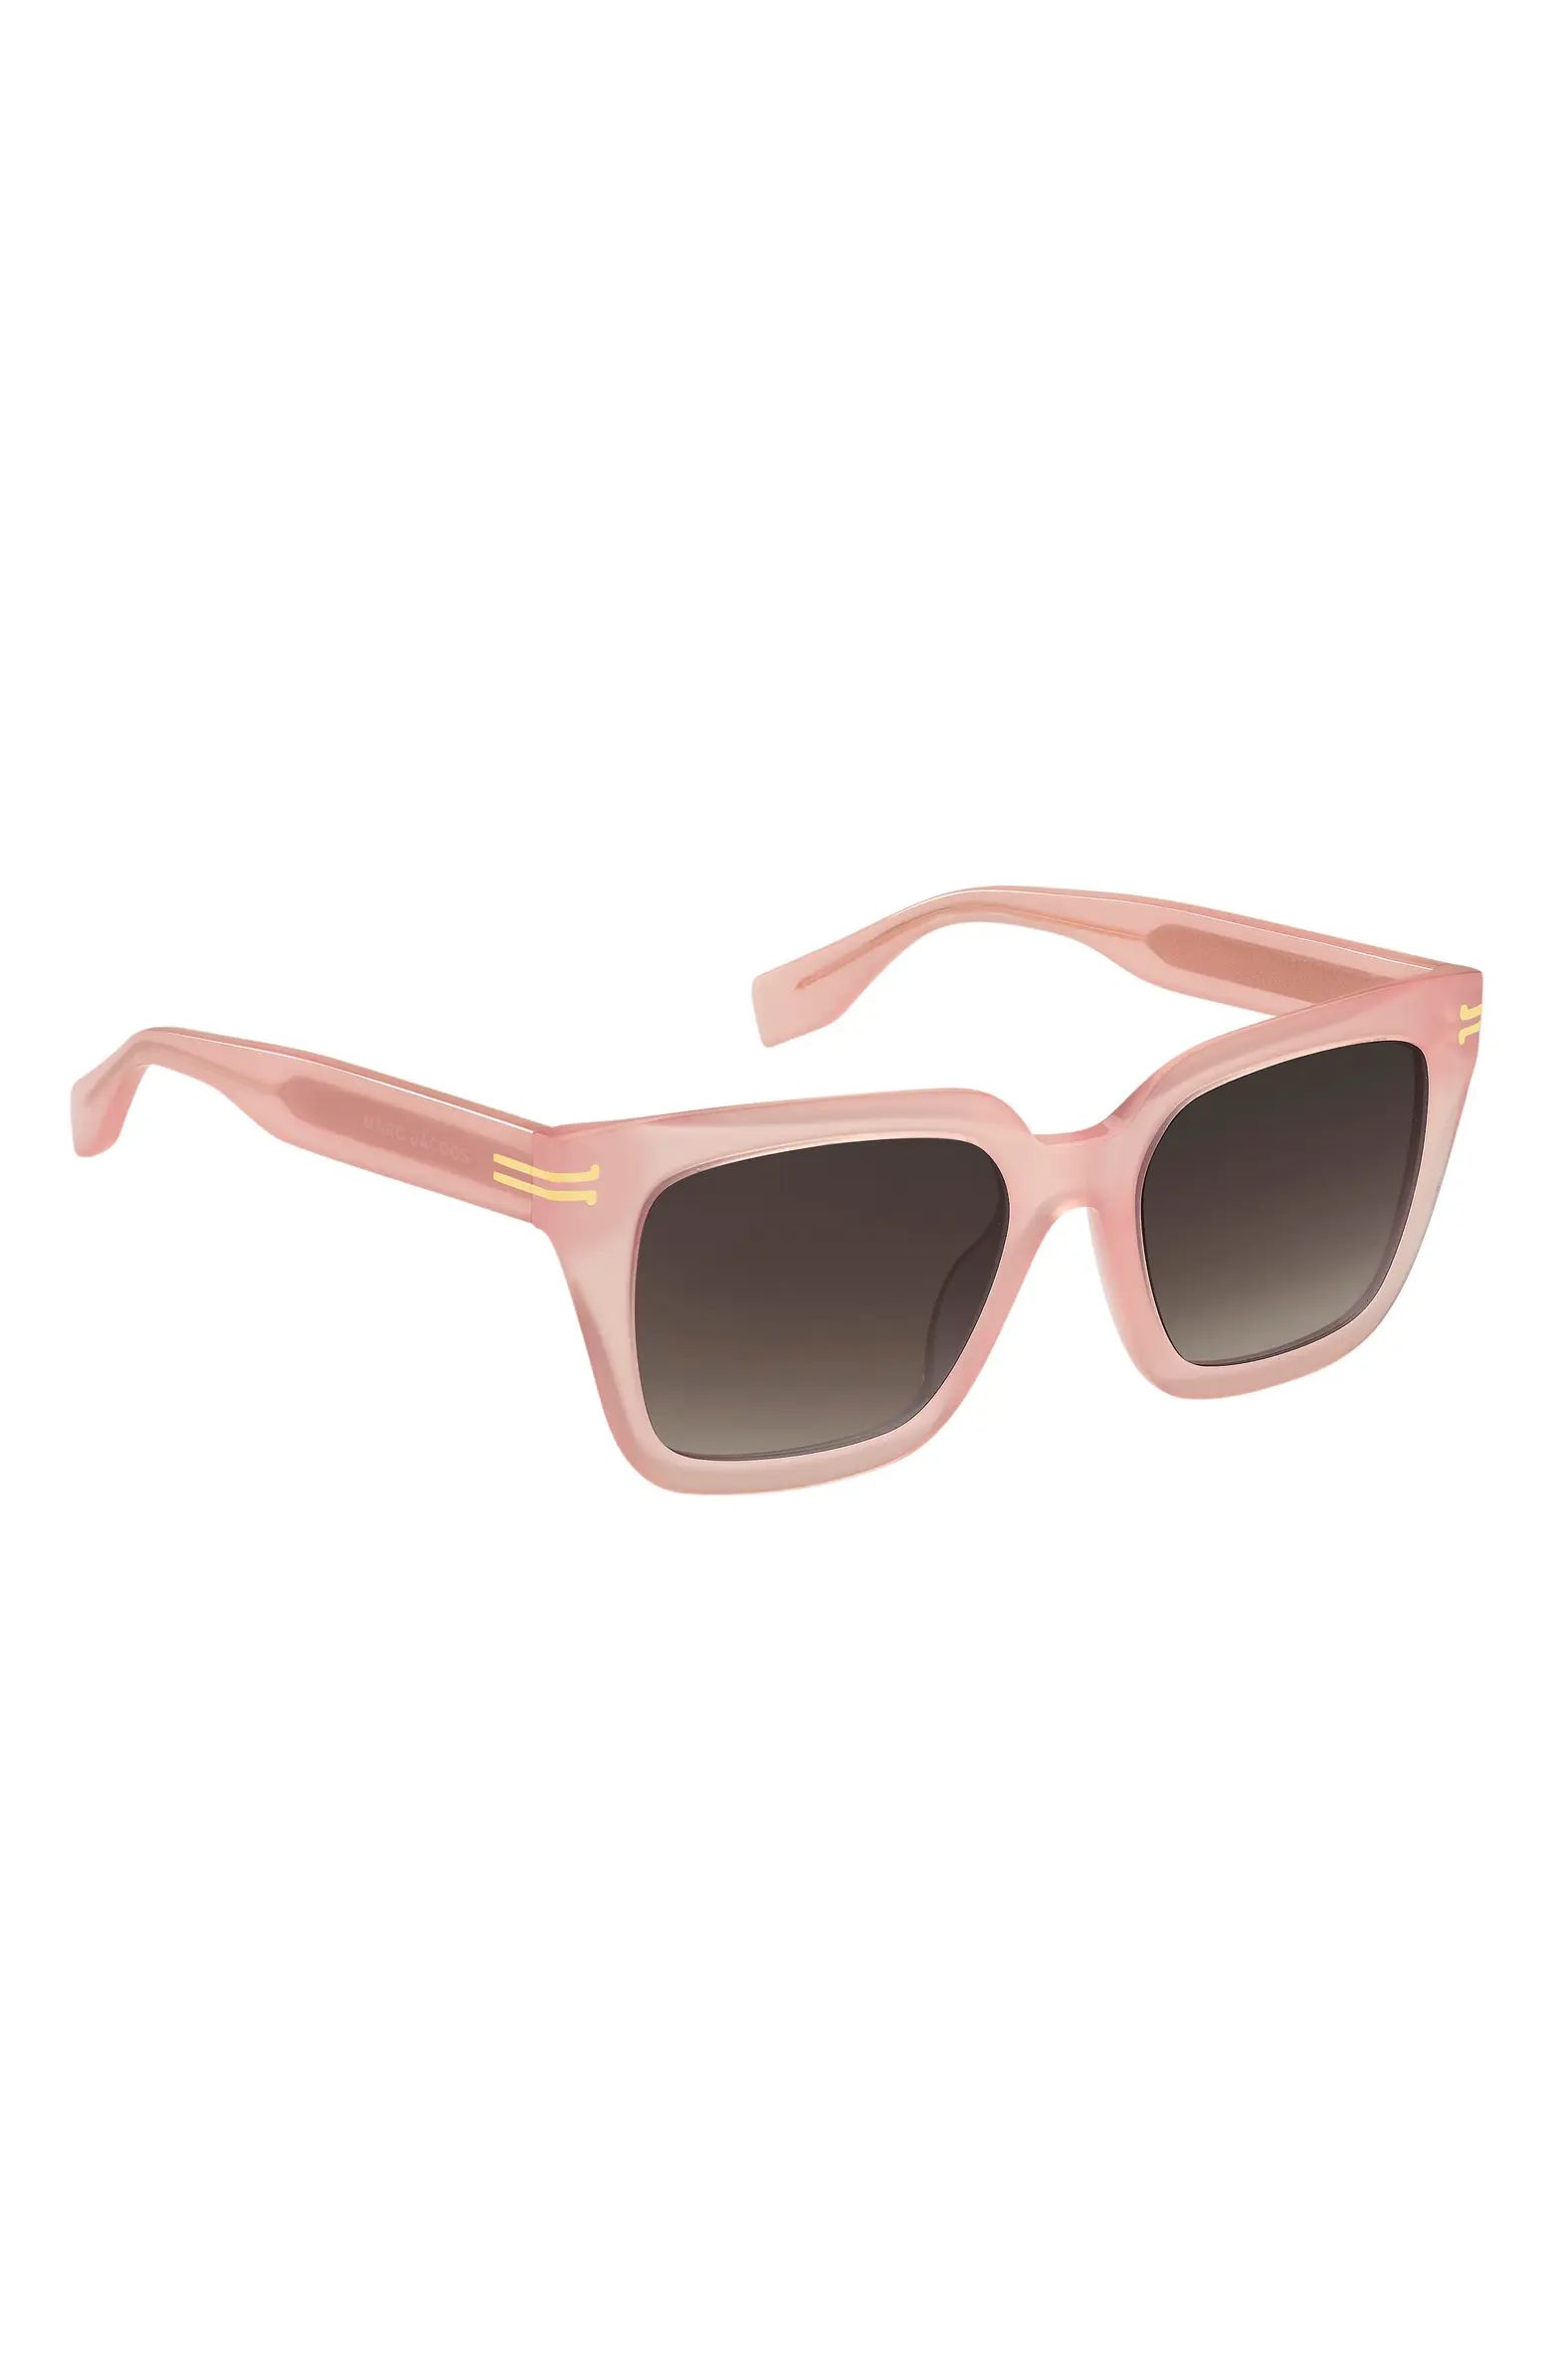 52mm Gradient Square Sunglasses | Nordstrom